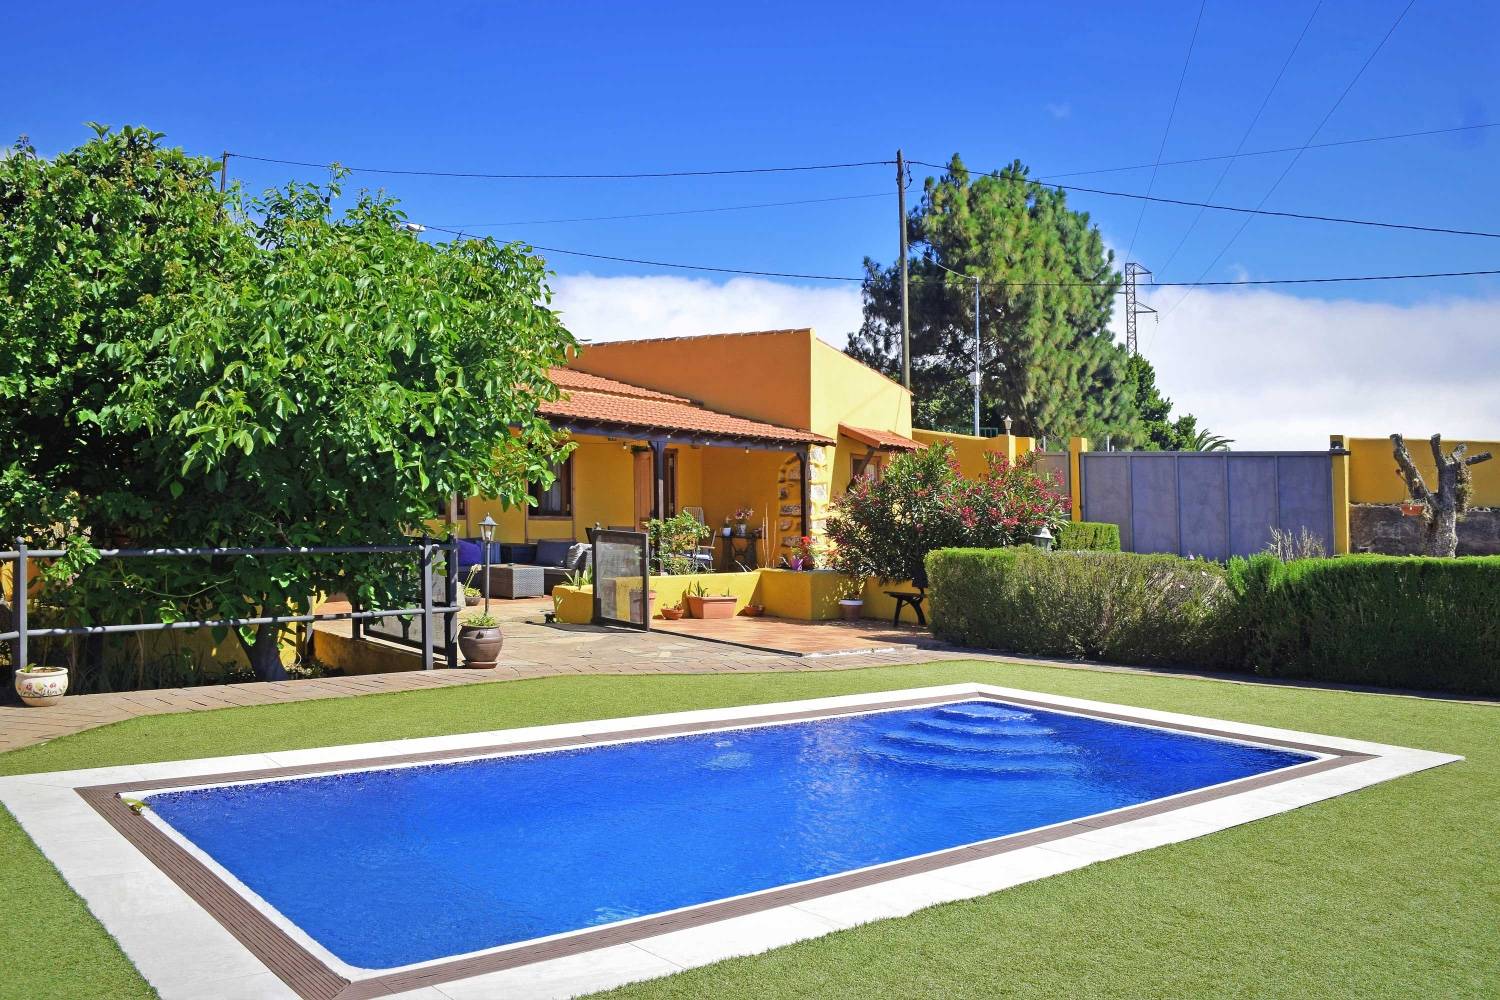 Rustikální rekreační dům s vlastním bazénu pro klidnou dovolenou na ostrově Tenerife